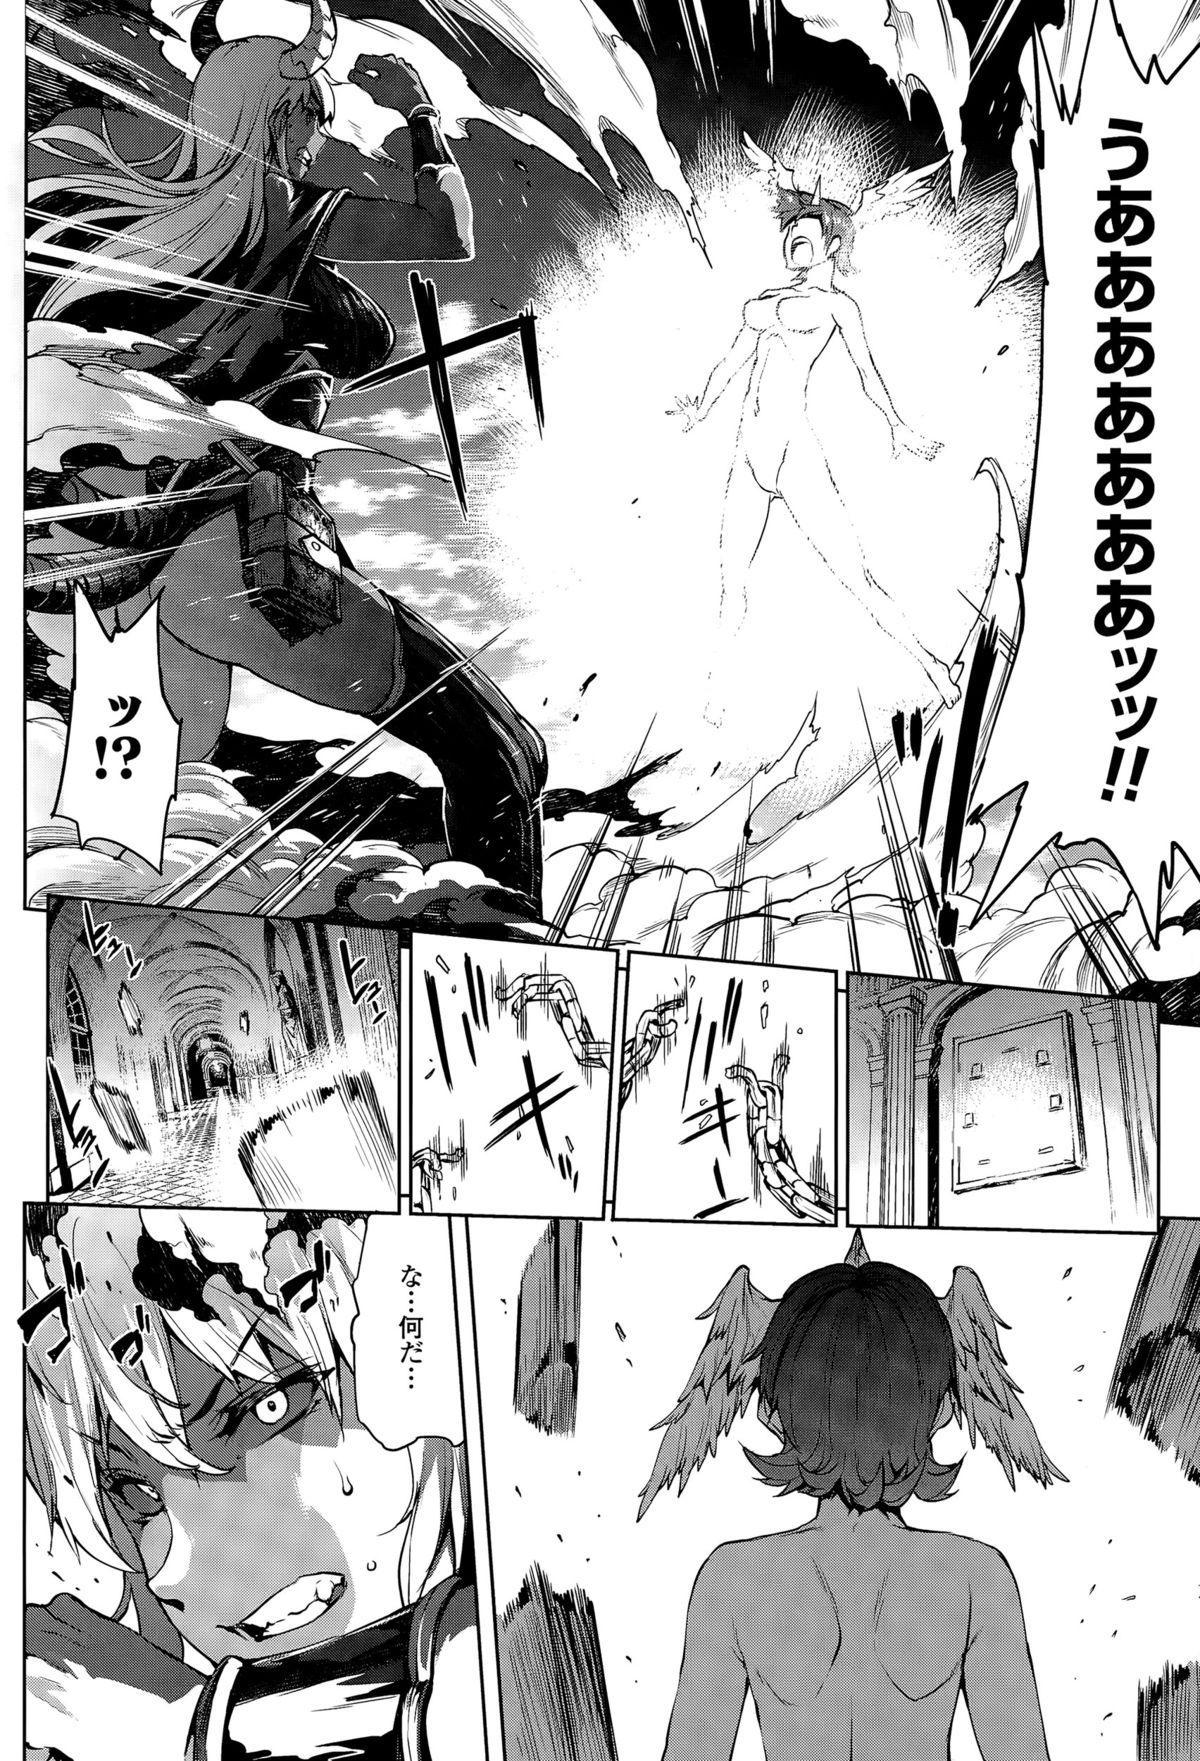 [Erect Sawaru] Shinkyoku no Grimoire -PANDRA saga 2nd story- CH 13-20 74